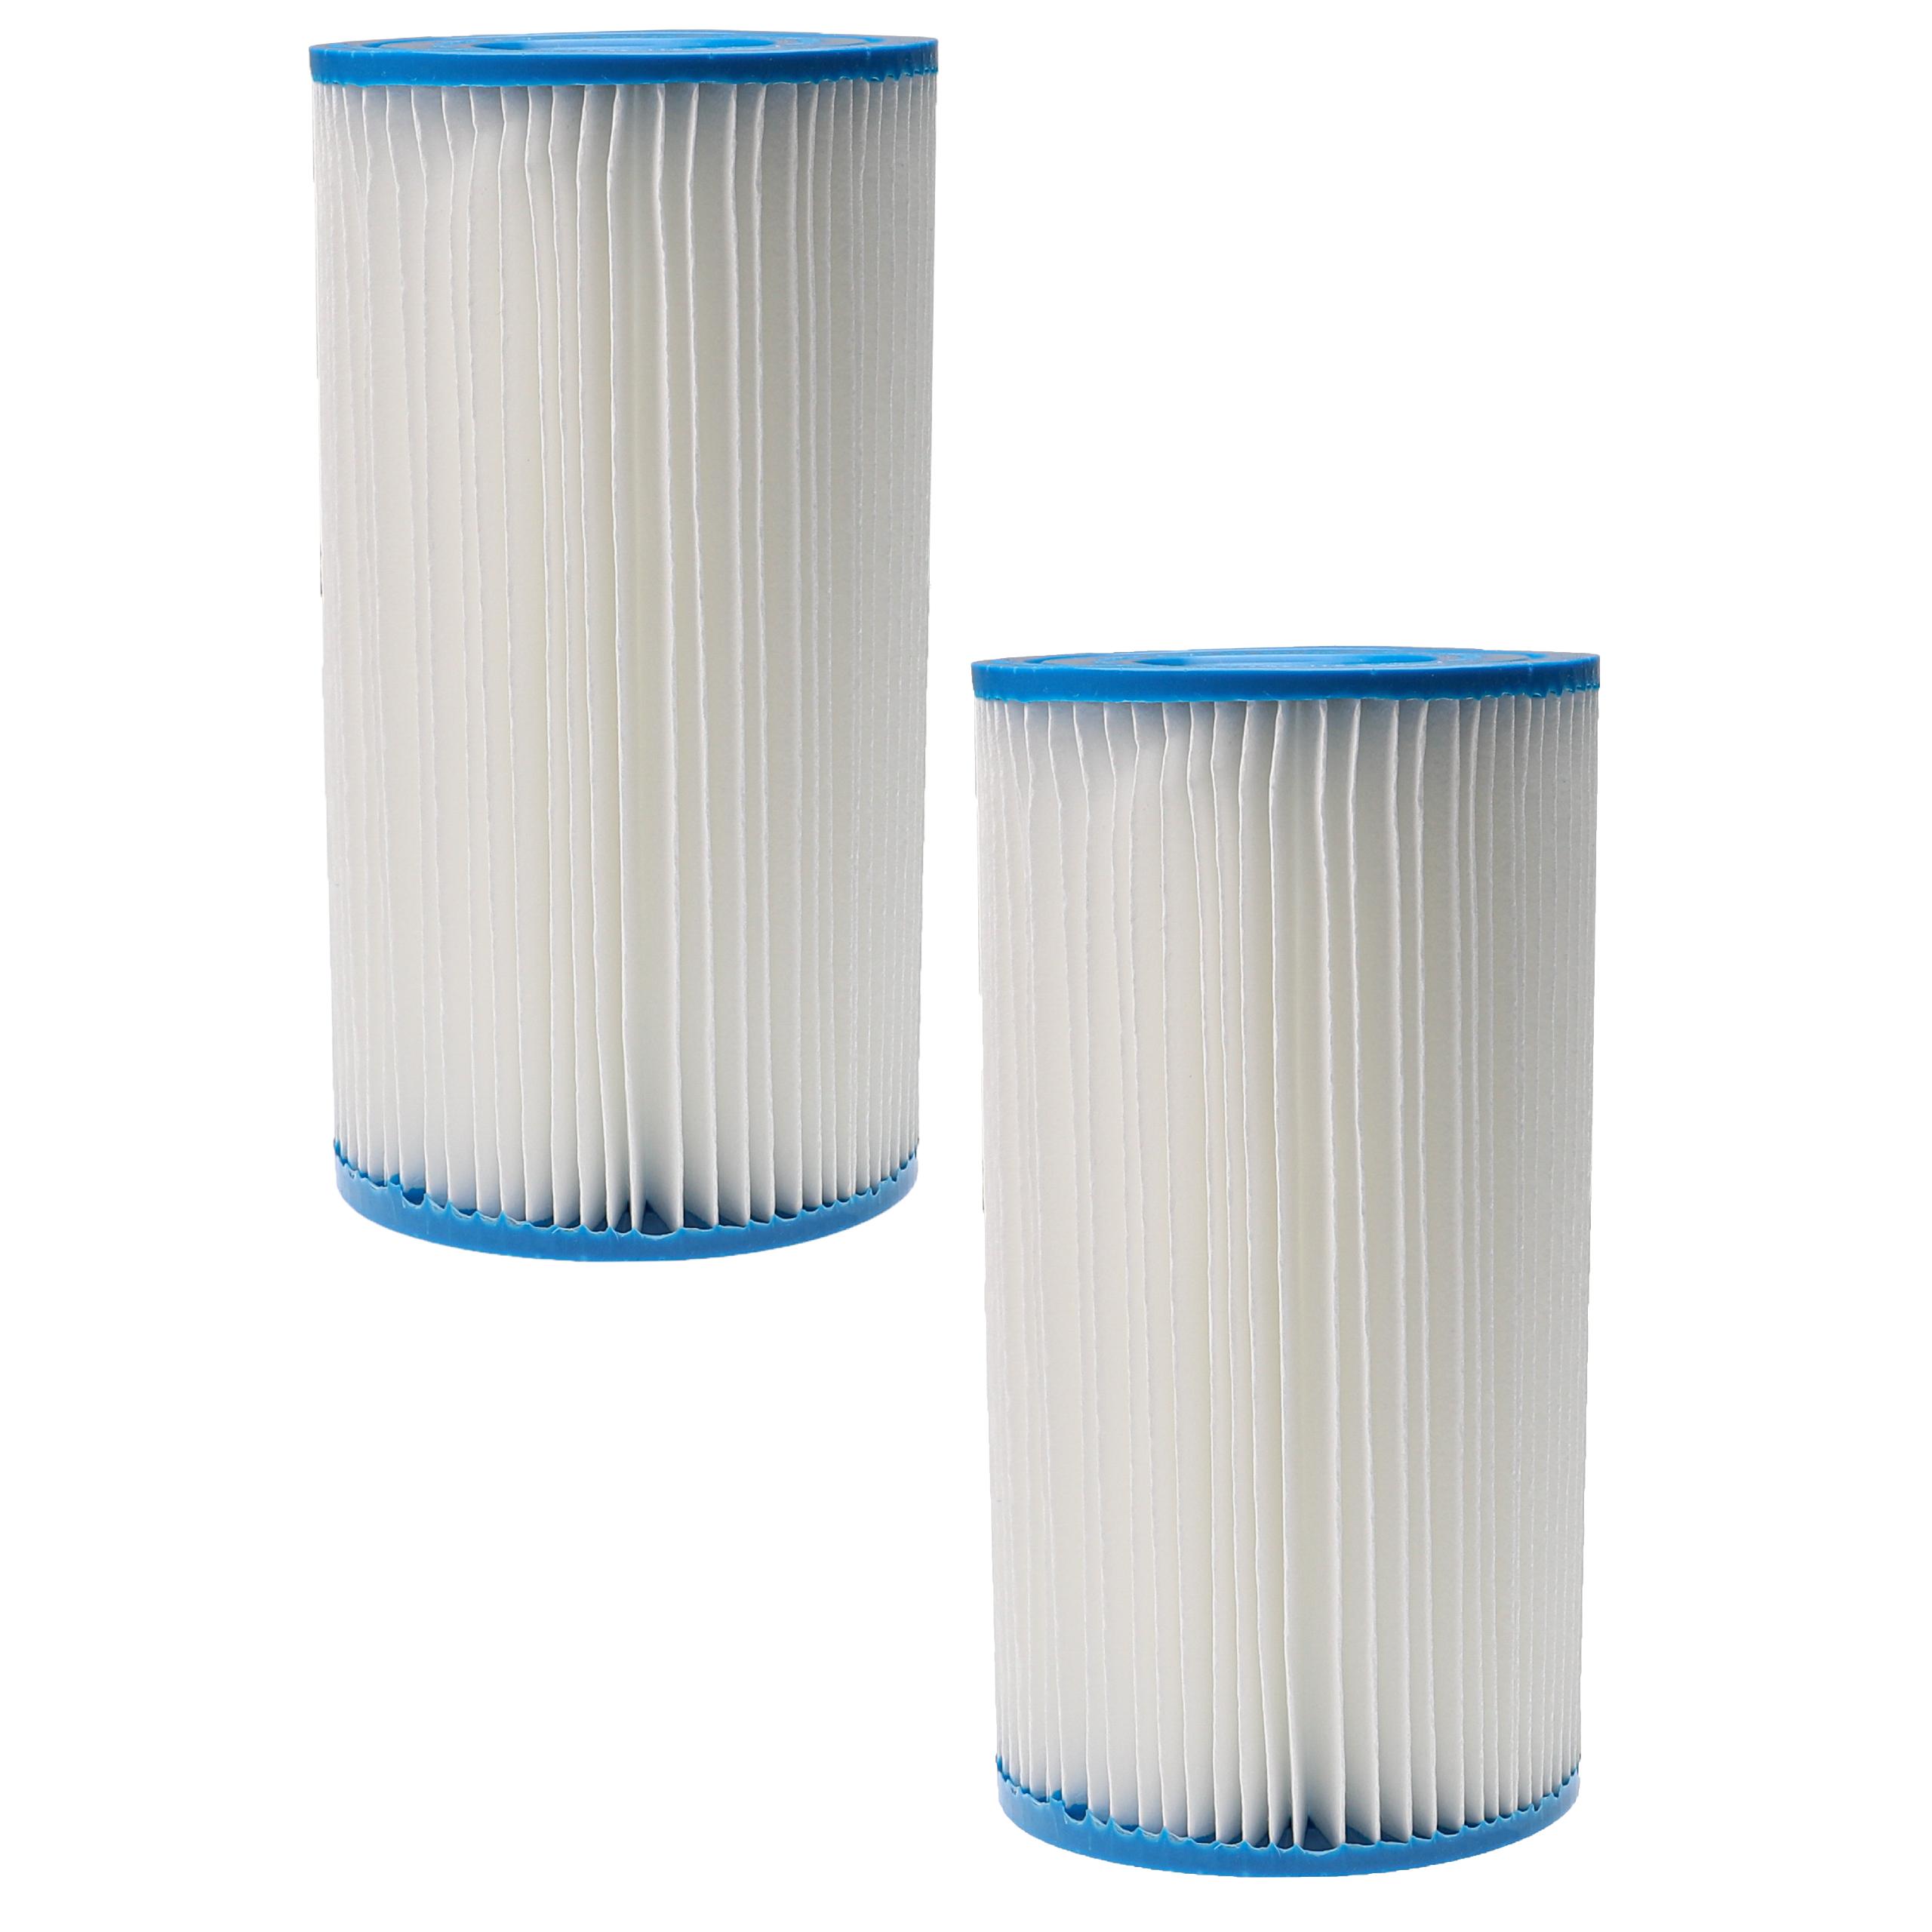 2x filtro de agua reemplaza Intex filtro tipo A para piscina y bomba de filtro Intex - Cartucho de filtro